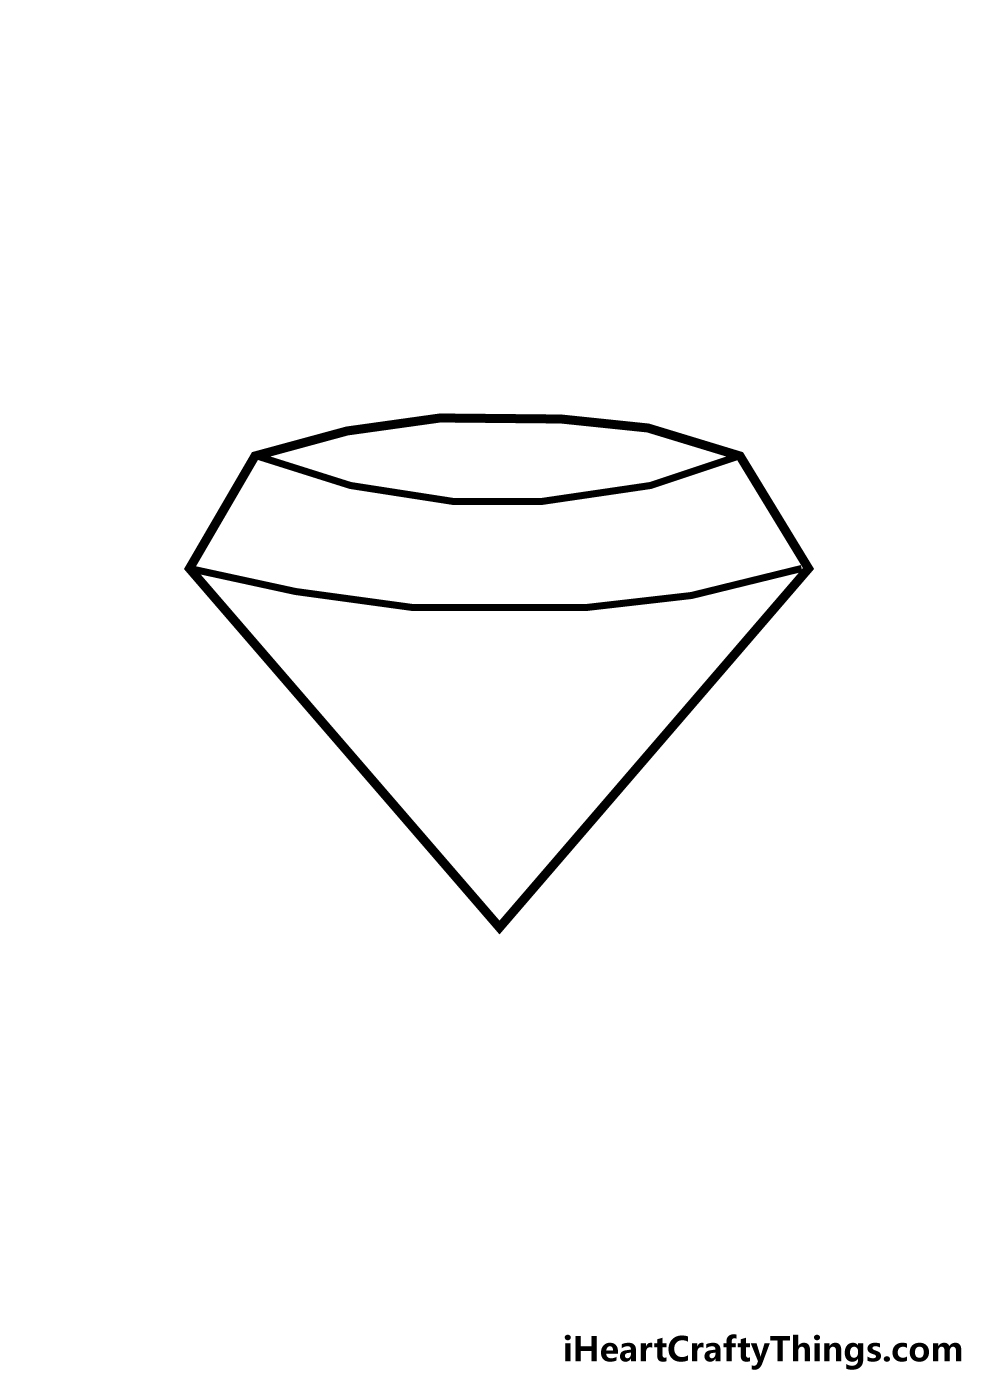 draw diamond step 3